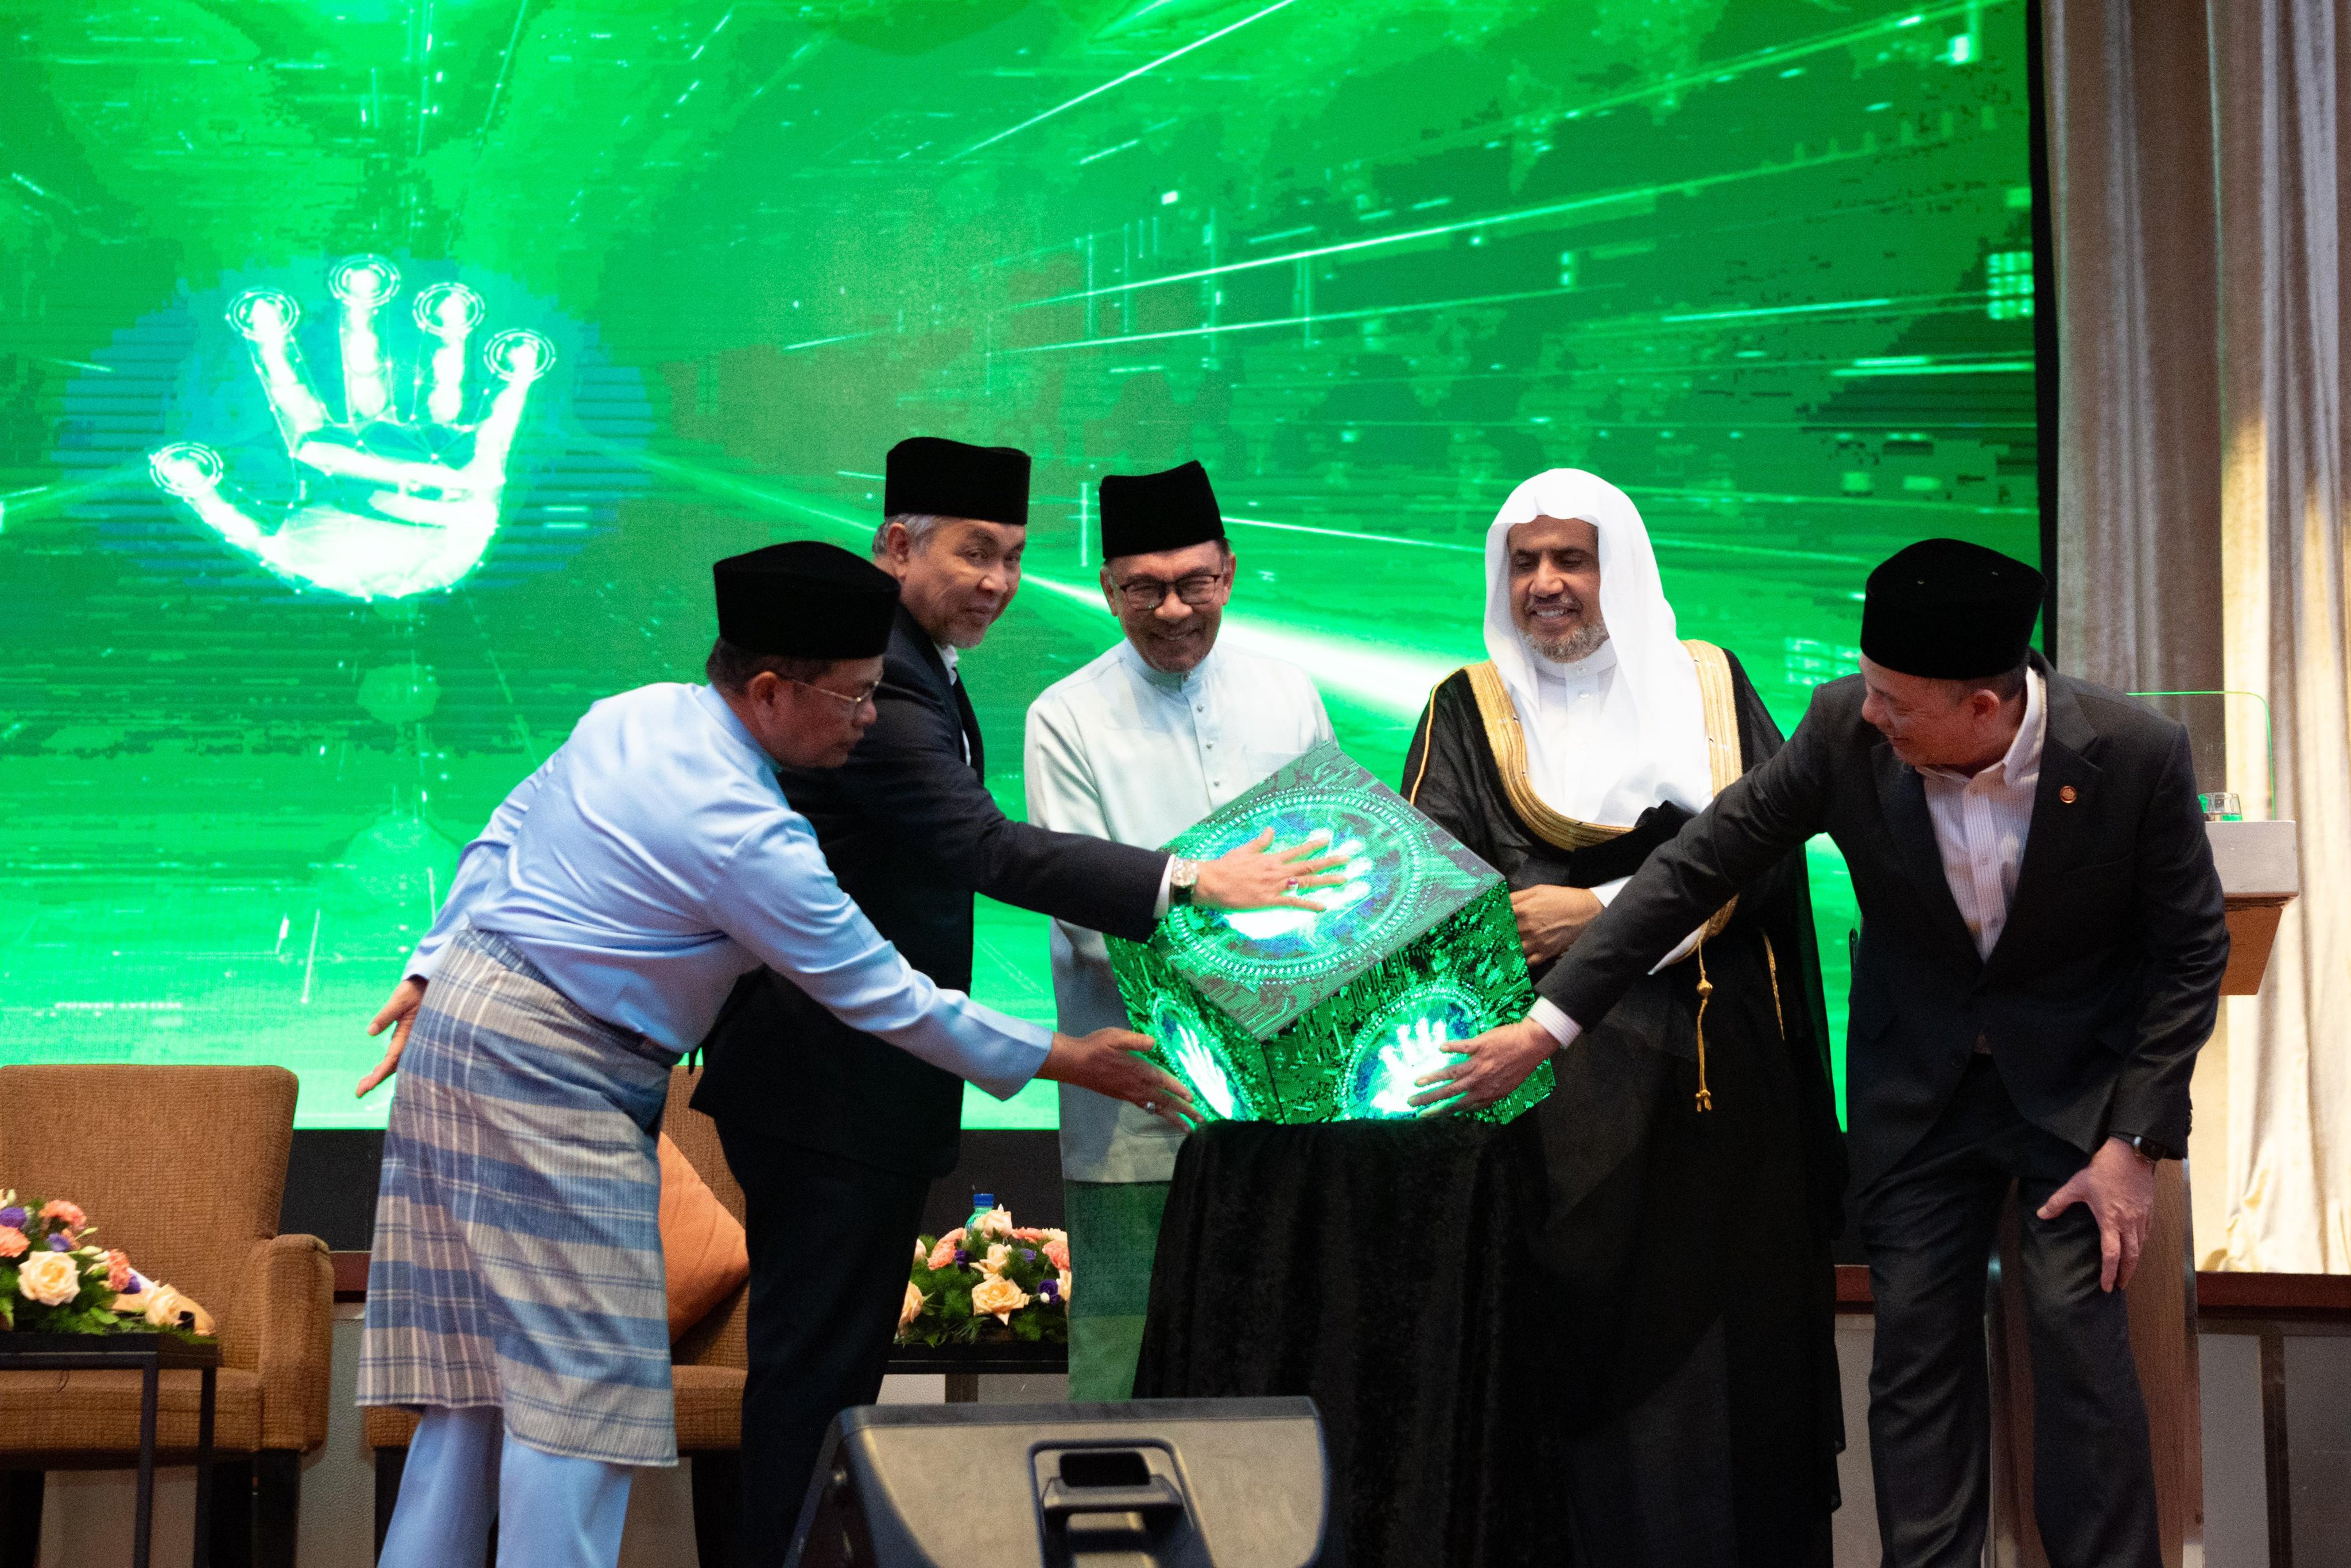 نخست وزیر مالزی از توجه به این کنفرانس با عنوان "کنفرانس بنیاد برادری و همکاری میان رهبران دینی" و به دنبال آن برگزاری کنفرانسی سالانه تحت عنوان "اجلاس رهبران دینی کوالالامپور" اعلام می کند، تا هر سال موضوعات جدیدی را مورد بحث و بررسی قرار دهد.